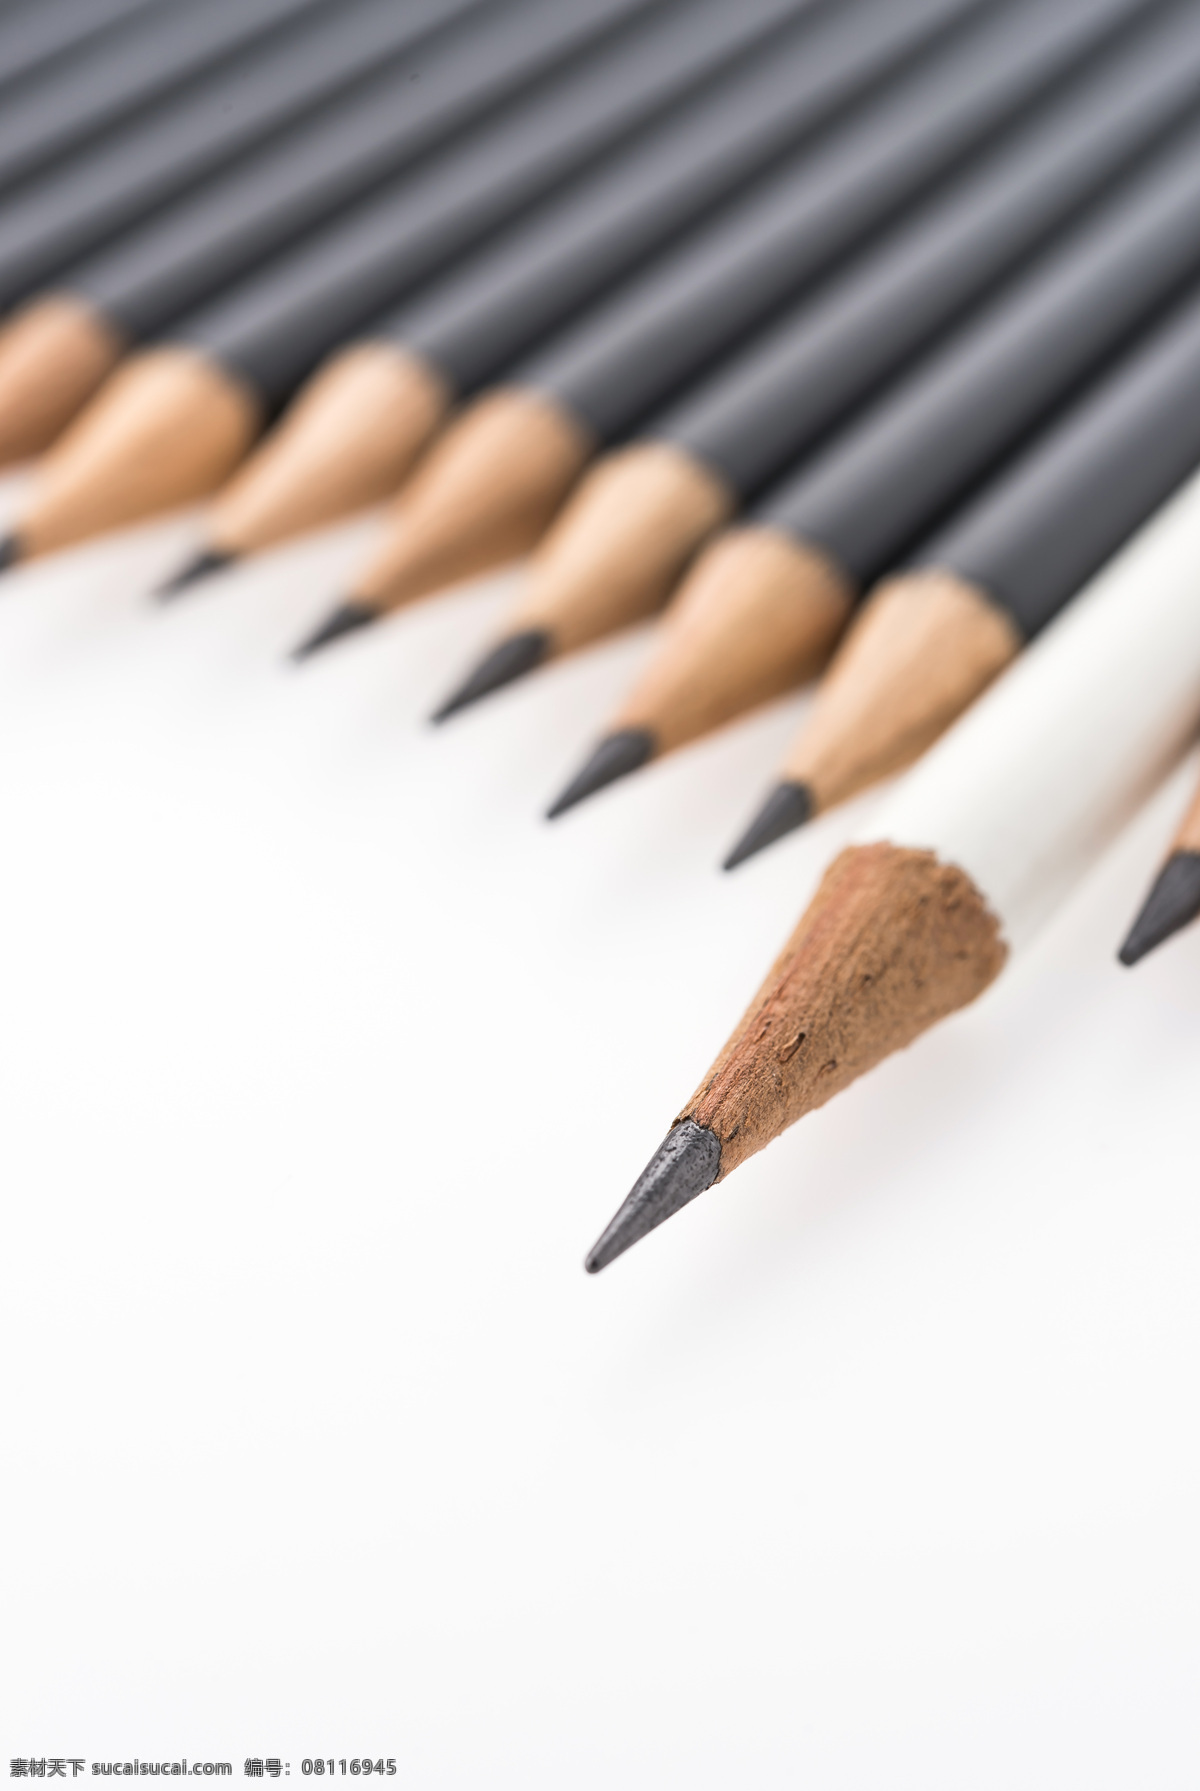 白色 黑色 铅笔 笔 绘画笔 彩色铅笔 书写工具 绘画工具 学习用品 其他类别 生活百科